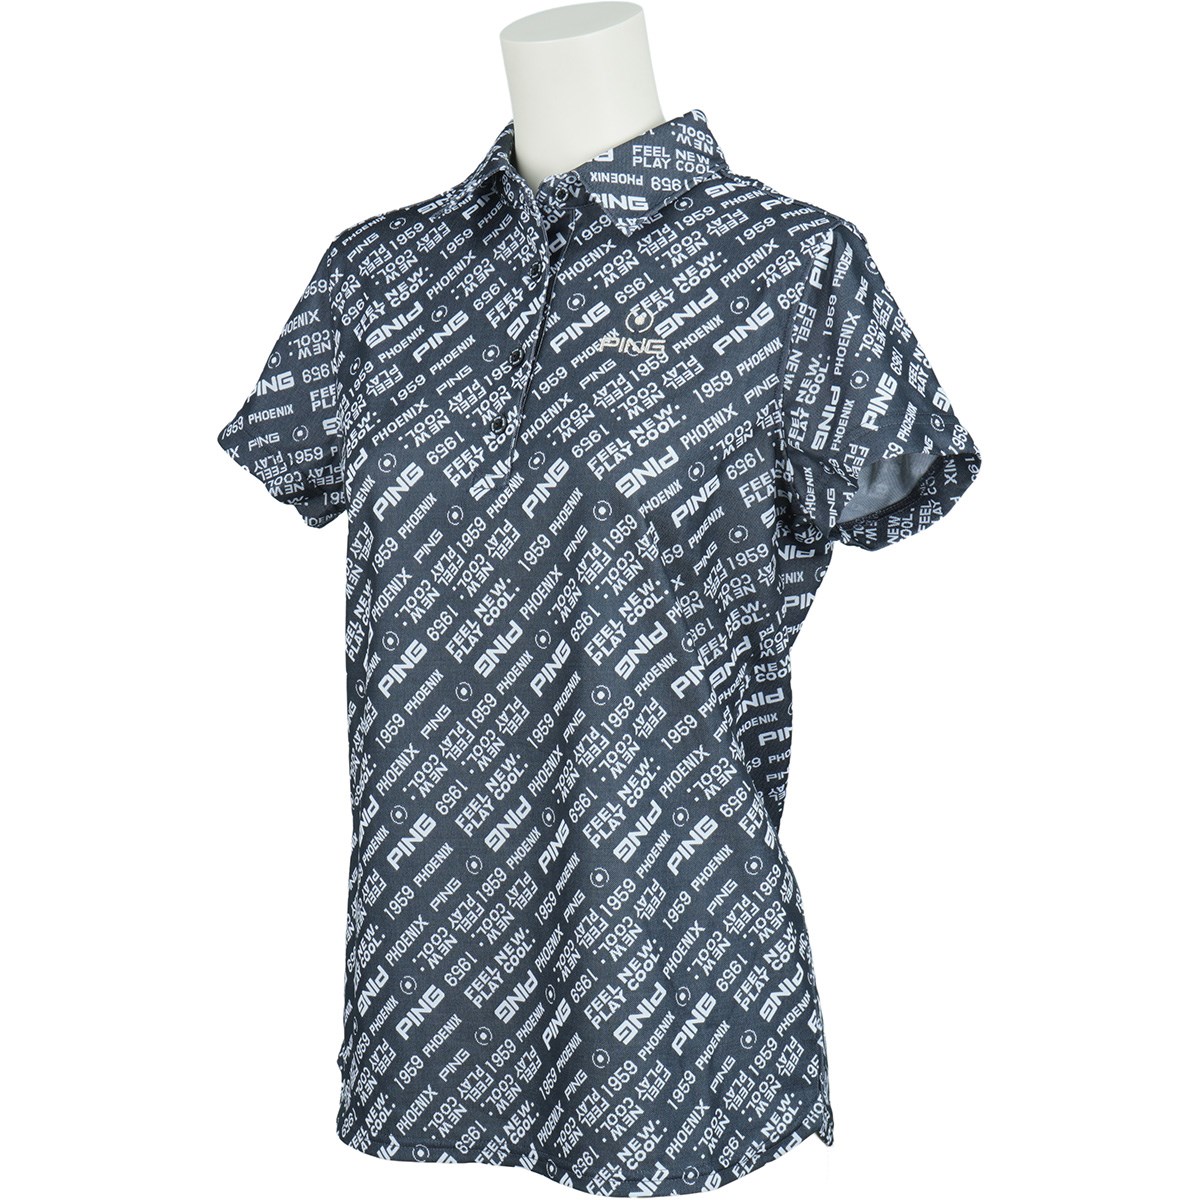 [アウトレット] [在庫限りのお買い得商品] ピン PING ロゴ半袖ポロシャツ ブラック 010 レディース ゴルフウェア